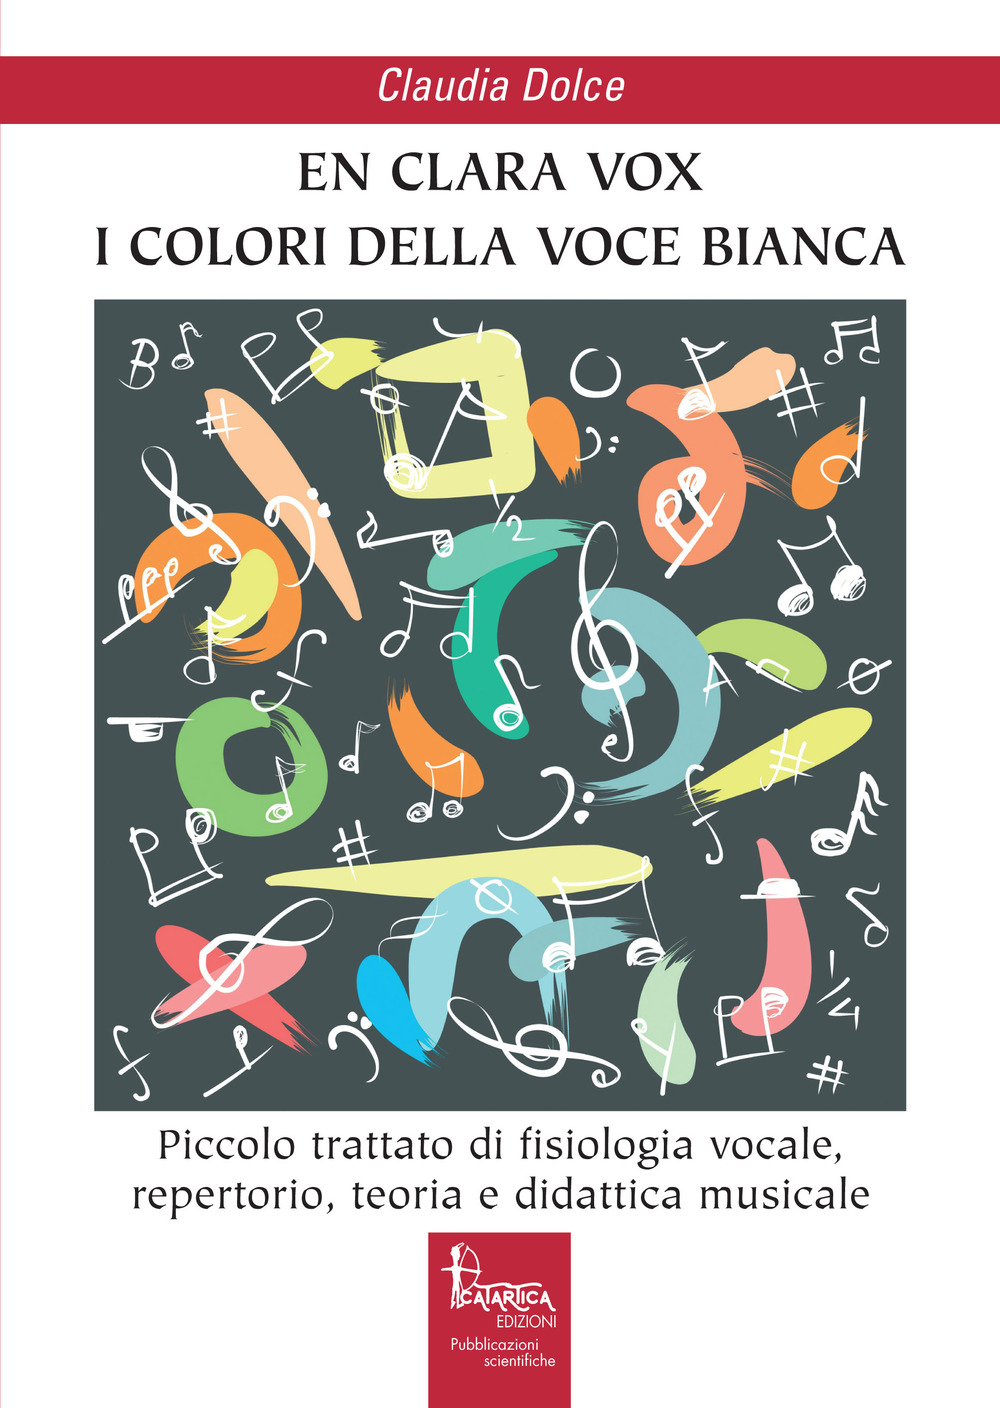 En clara vox, I colori della voce bianca. Piccolo trattato di fisiologia vocale, repertorio, teoria e didattica musicale